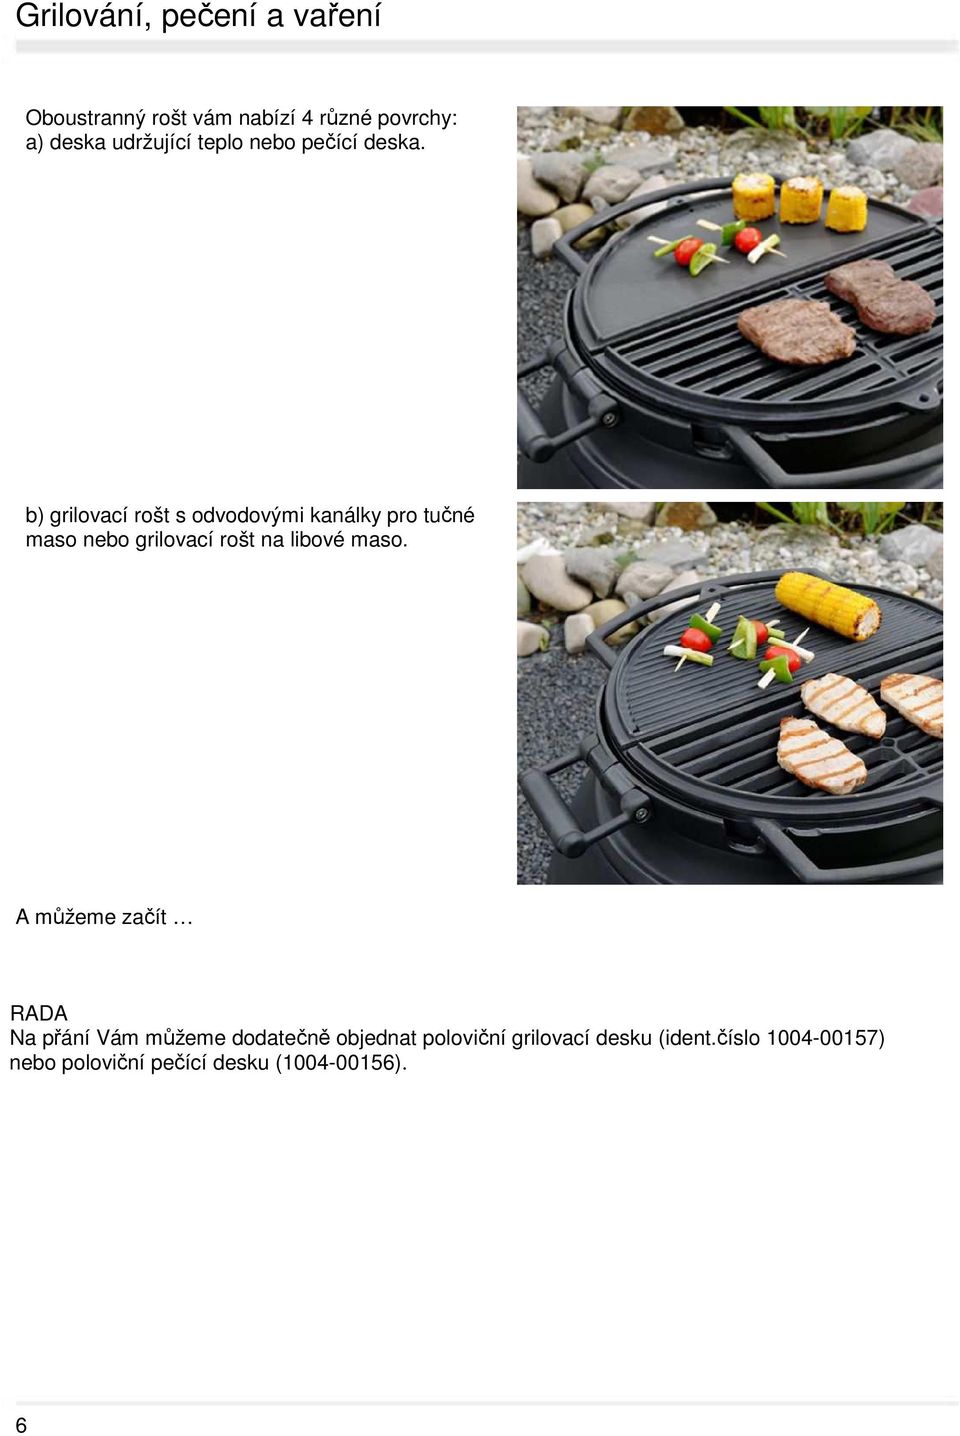 b) grilovací rošt s odvodovými kanálky pro tučné maso nebo grilovací rošt na libové maso.